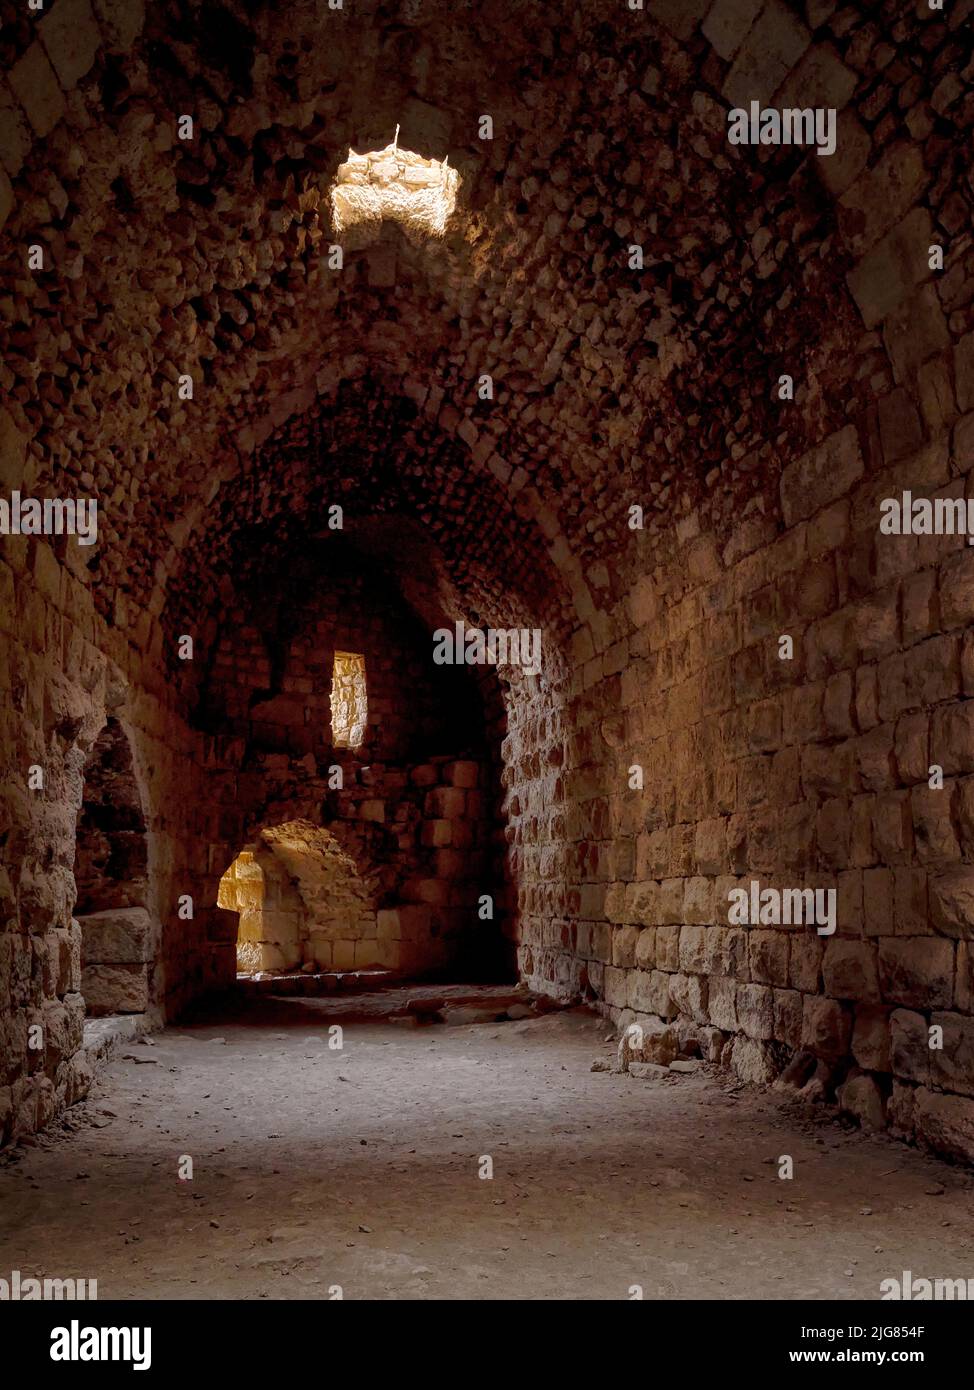 Nel castello crociato Kerak, Giordania Foto Stock